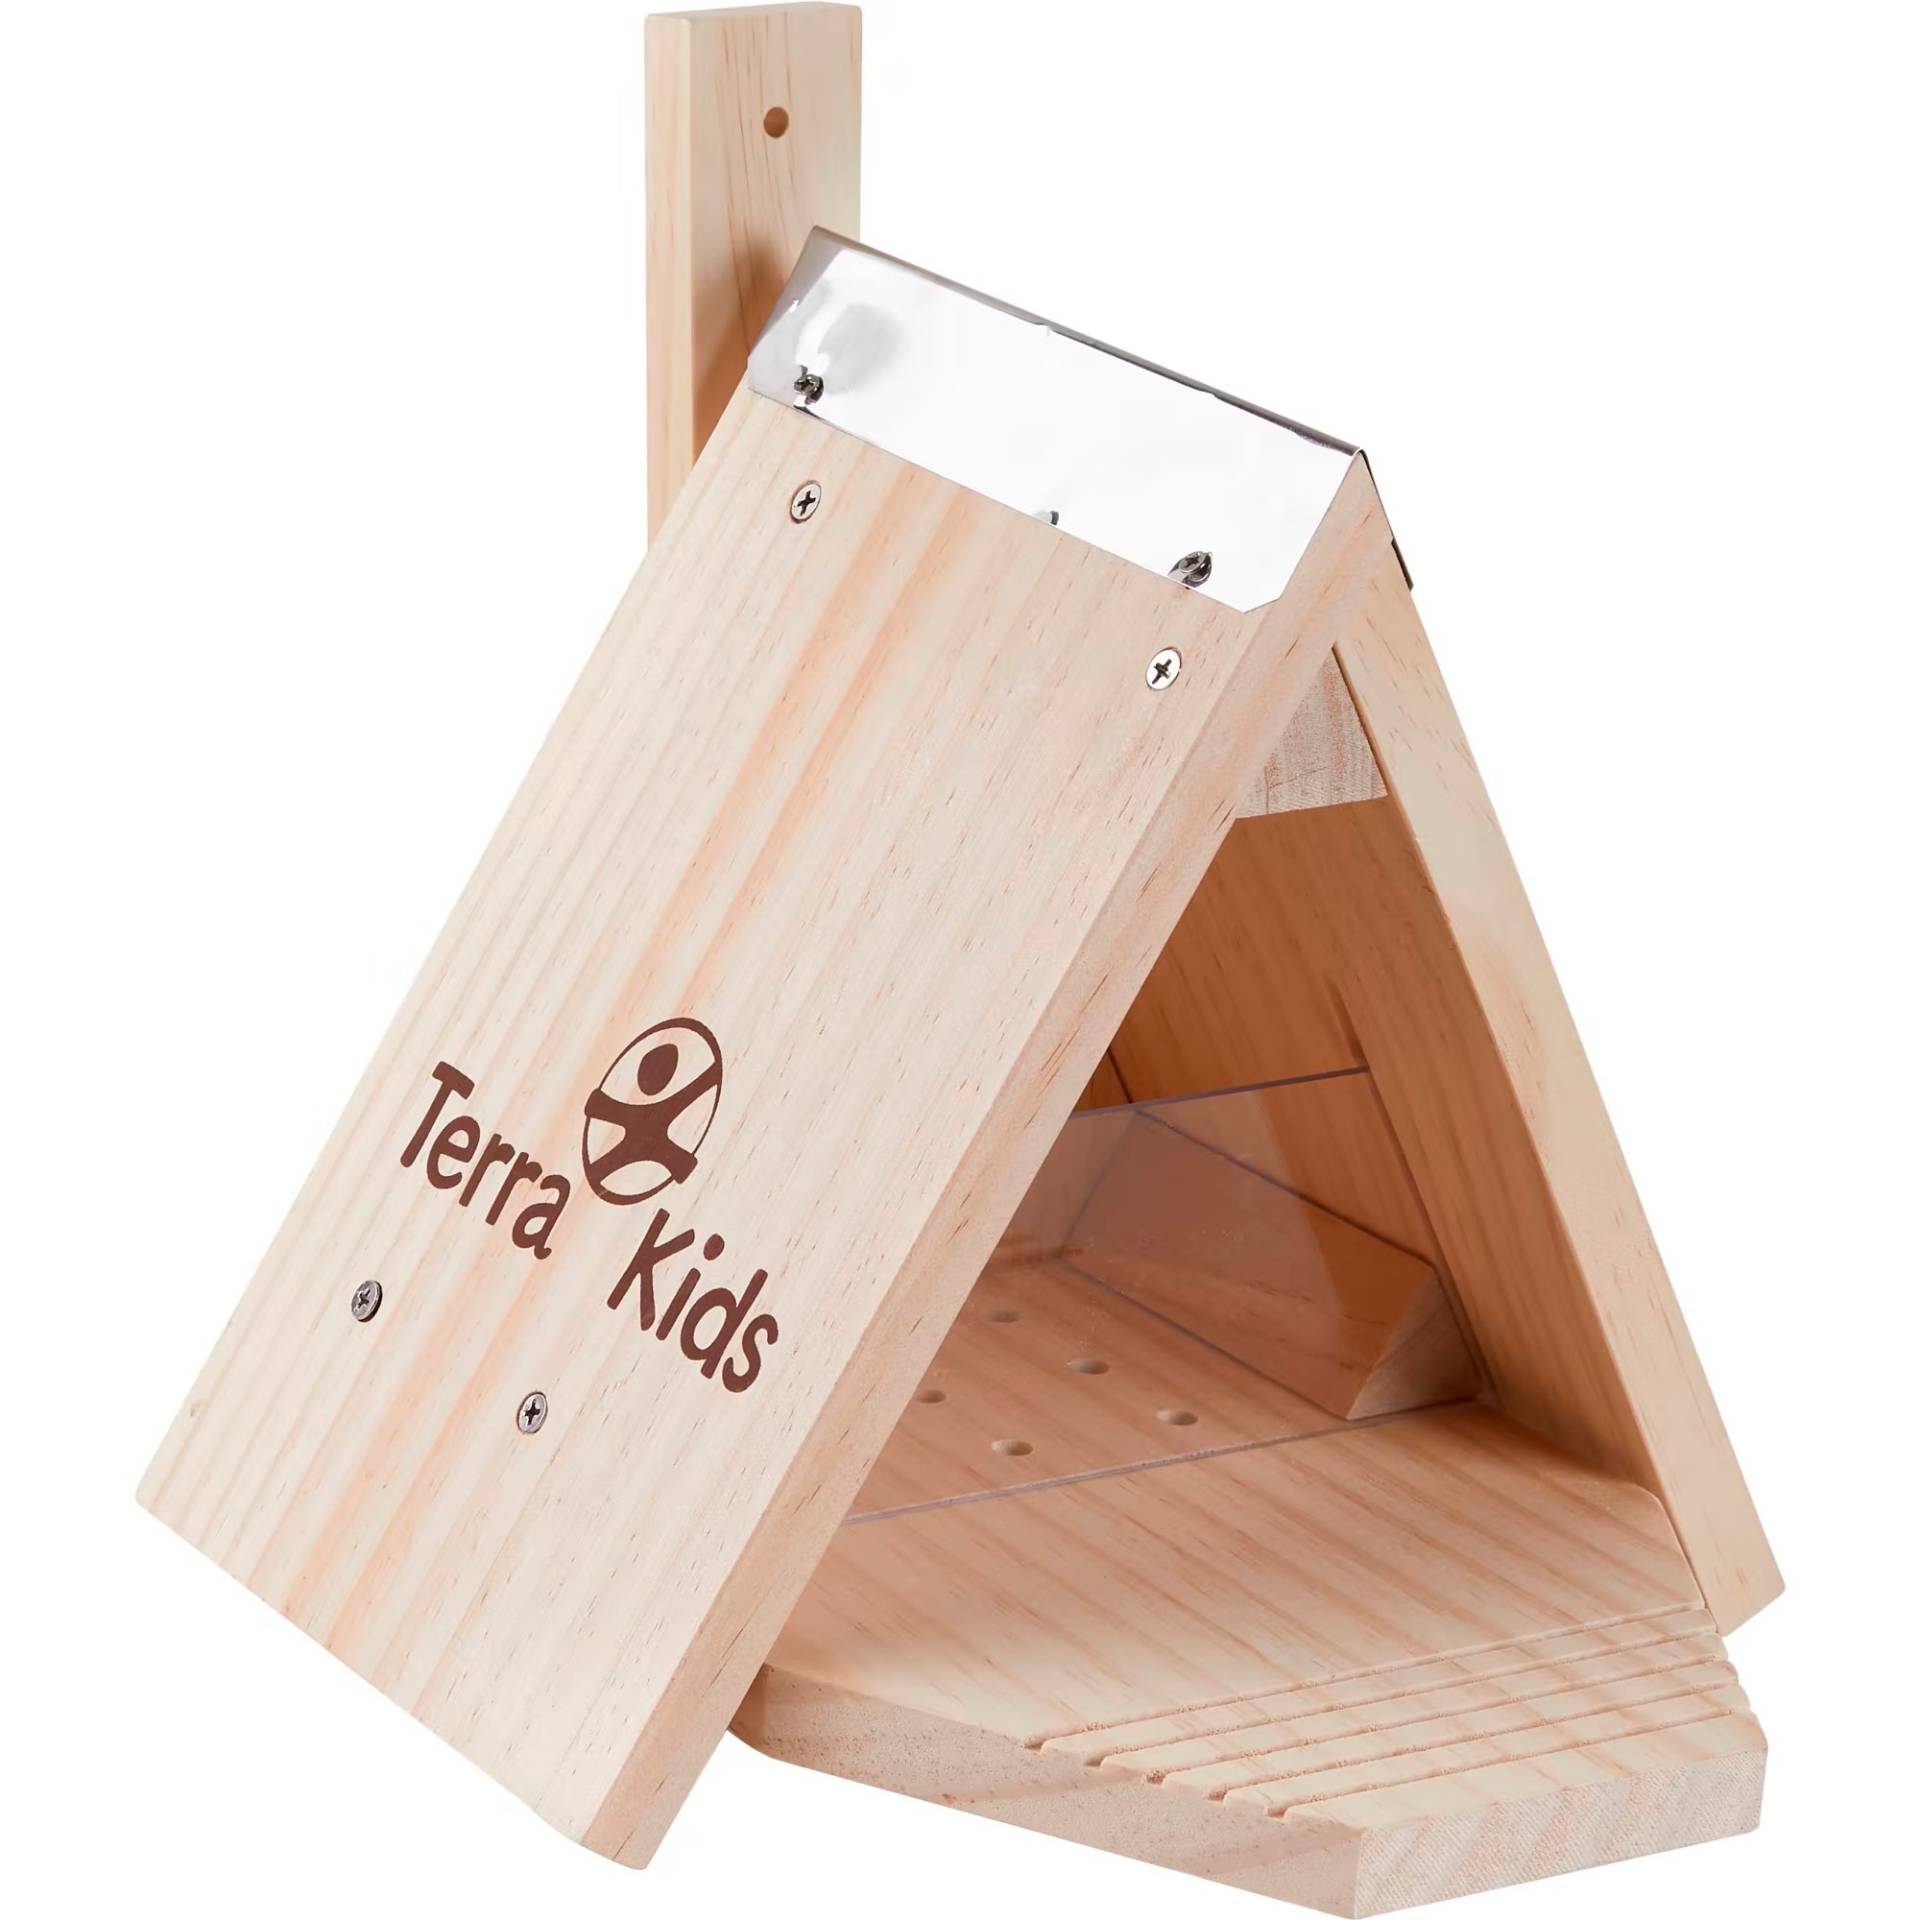 Terra Kids Eichhörnchen Futterhaus-Bausatz, Experimentierkasten von HABA